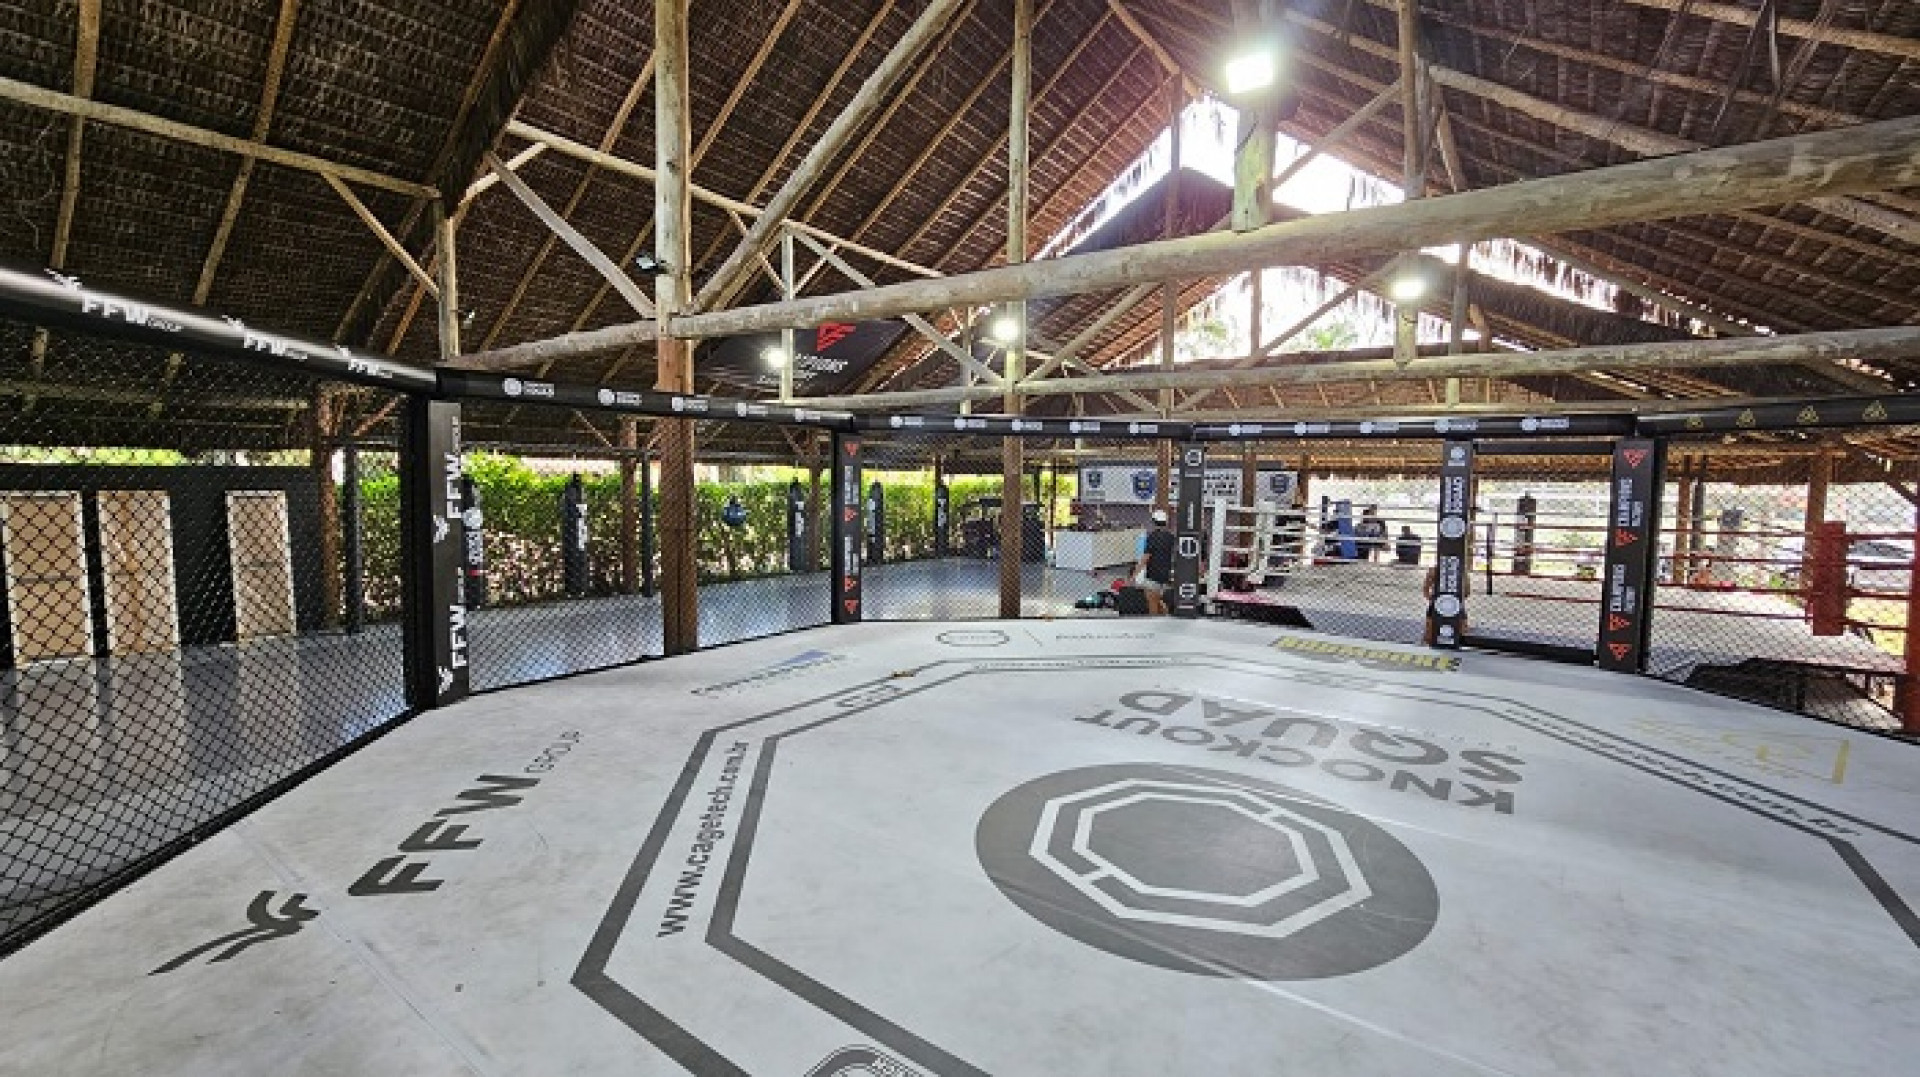 CT agora une o melhor do Muay Thai e do MMA em um só lugar -  (Foto: Divulgação)